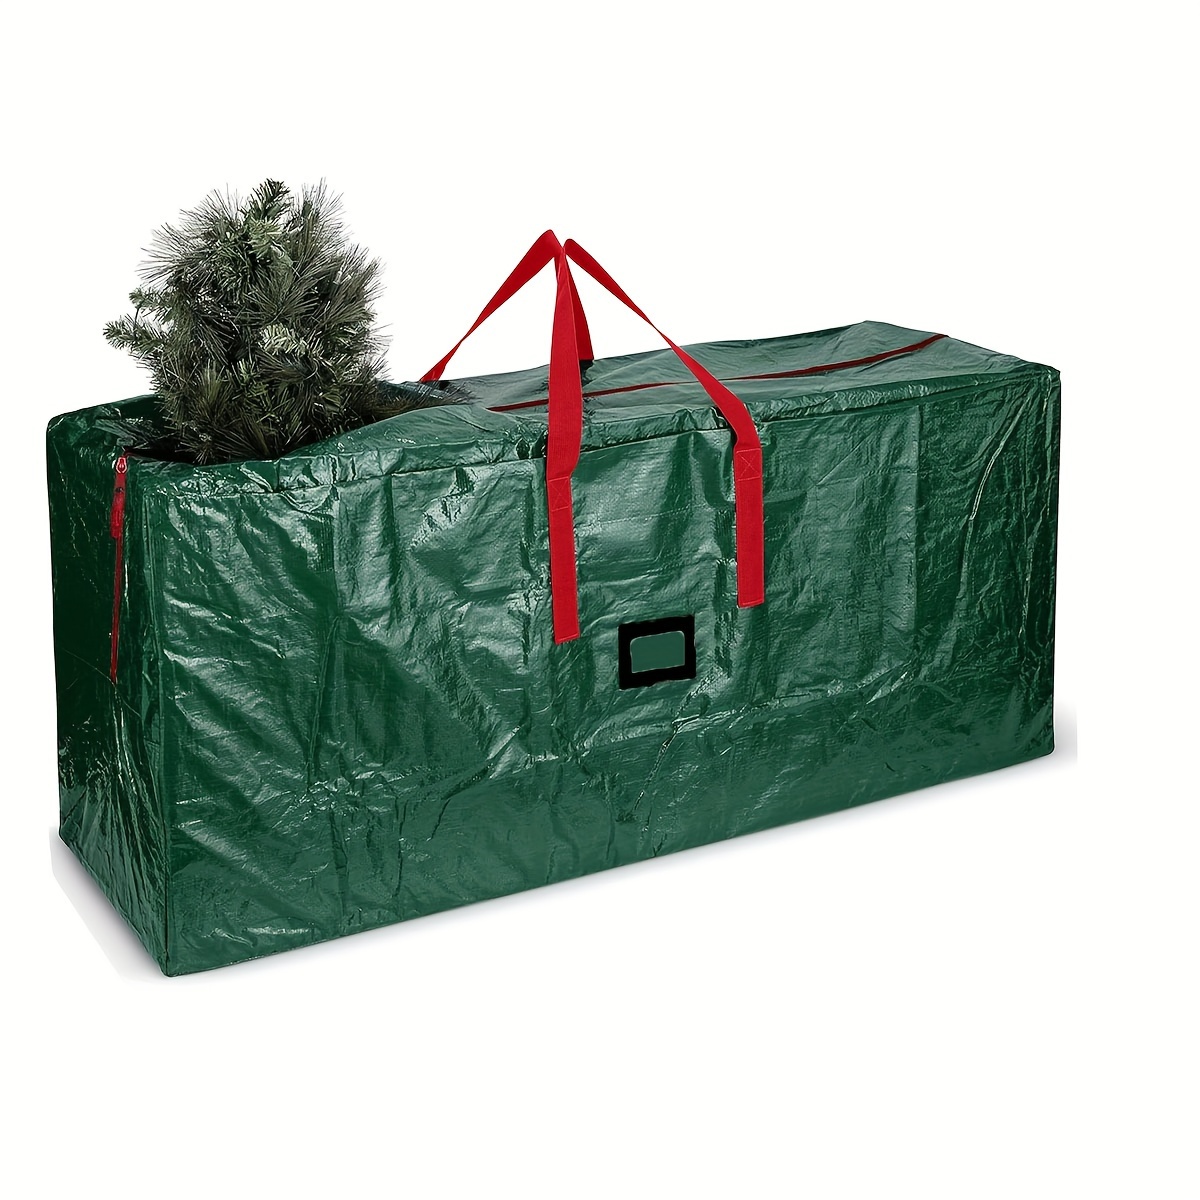 Sac de rangement pour sapin de Noël de 1,8 m, sac pour sapin de Noël  jusqu'à 2,7 m, 4 poignées renforcées et double fermeture éclair, tissu  Oxford